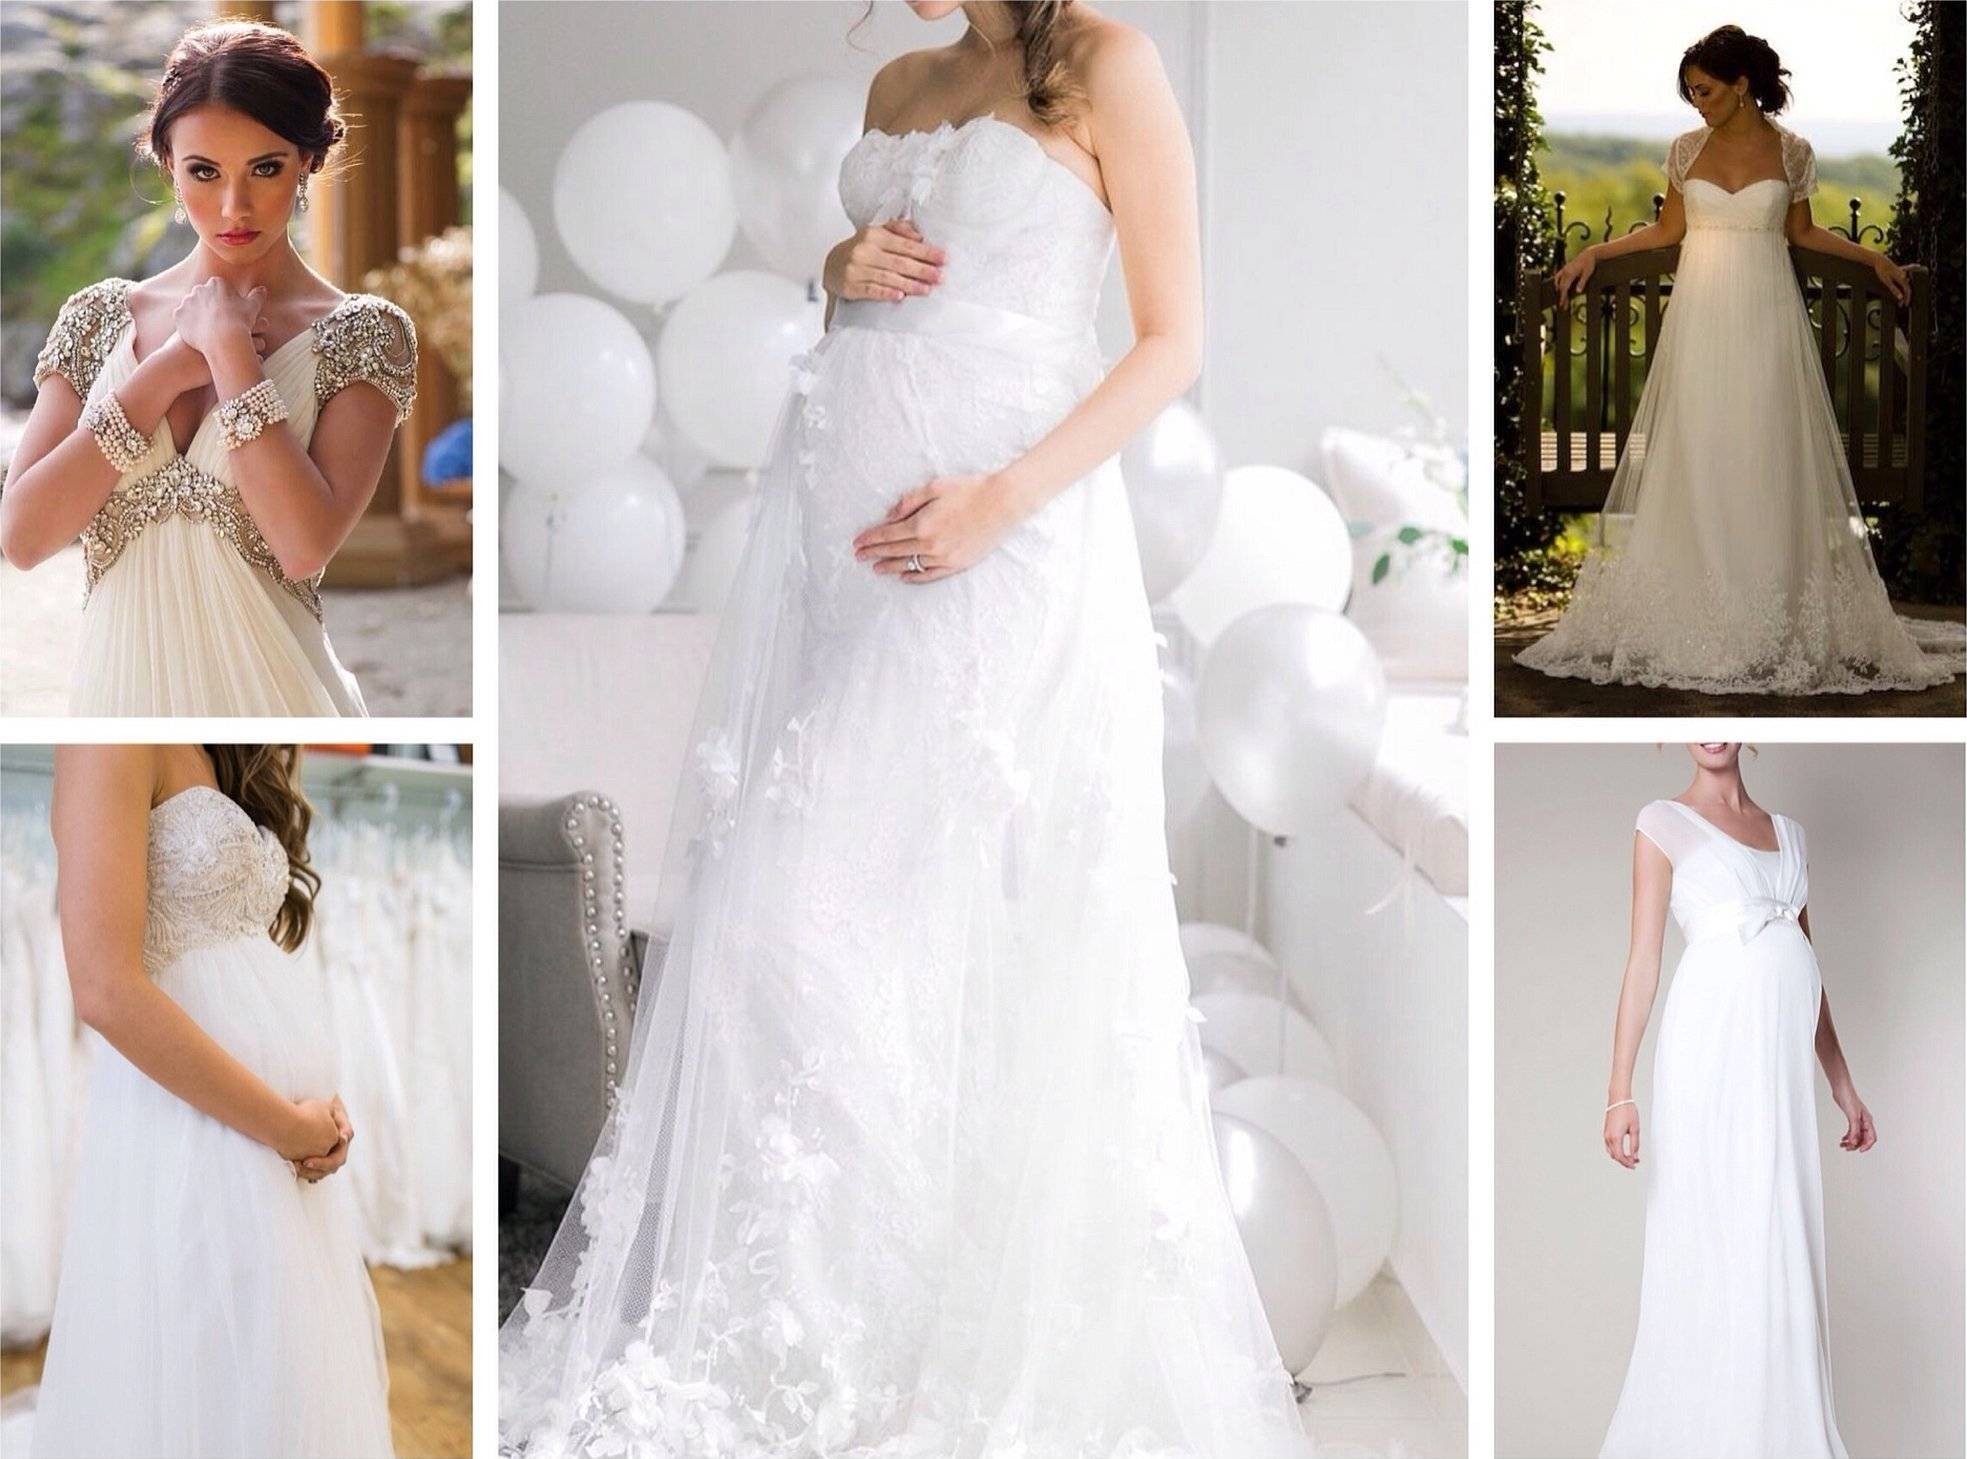 Платье для беременной невесты: как выбрать фасон и цвет наряда